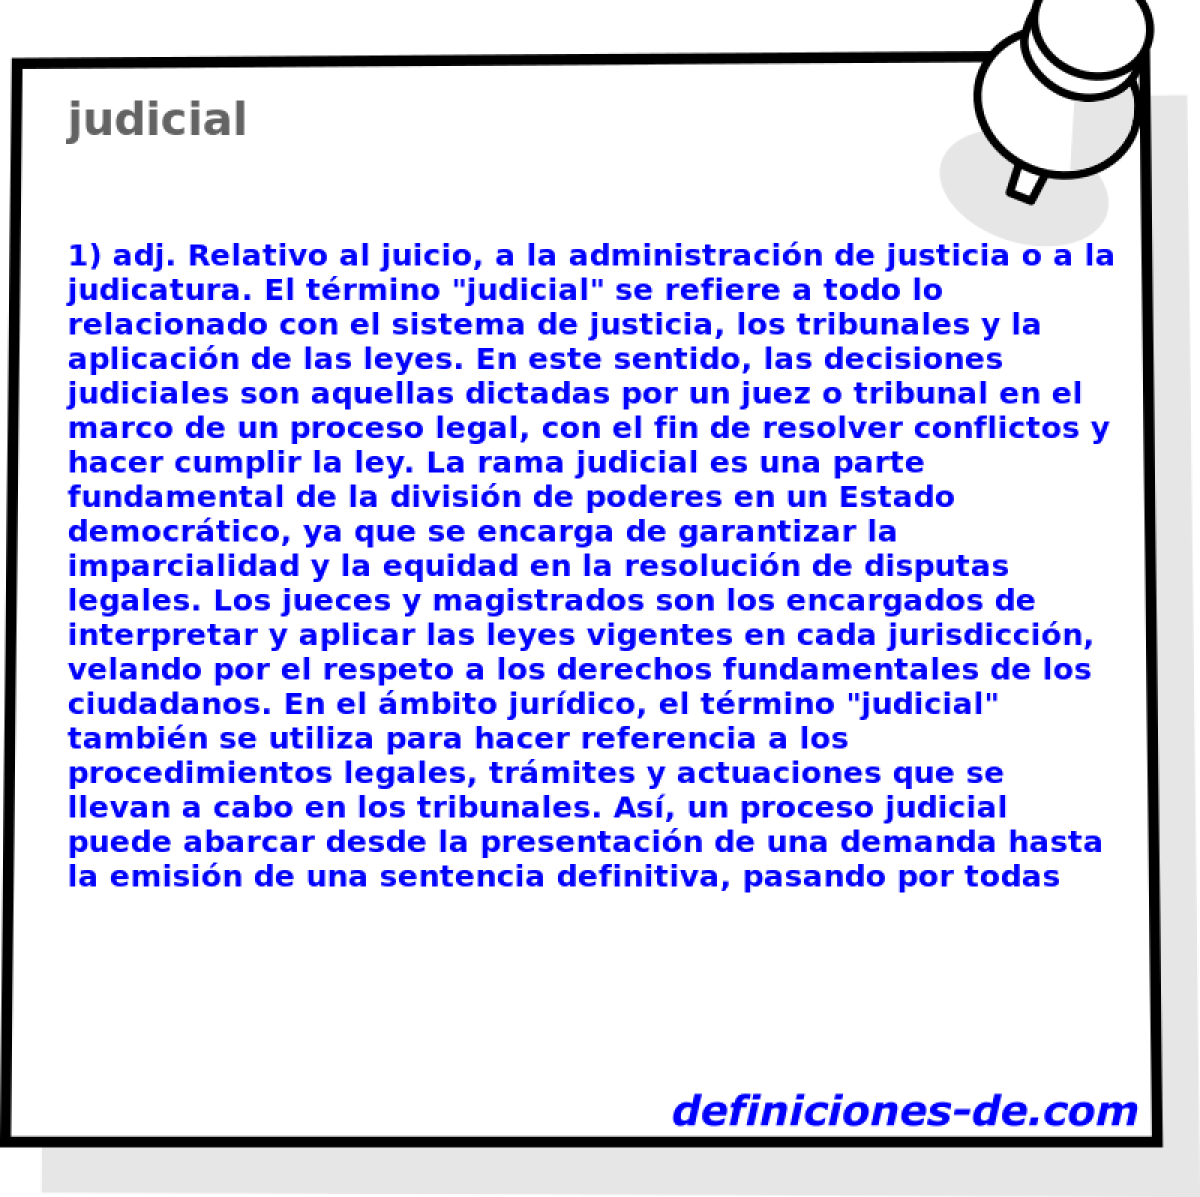 judicial 